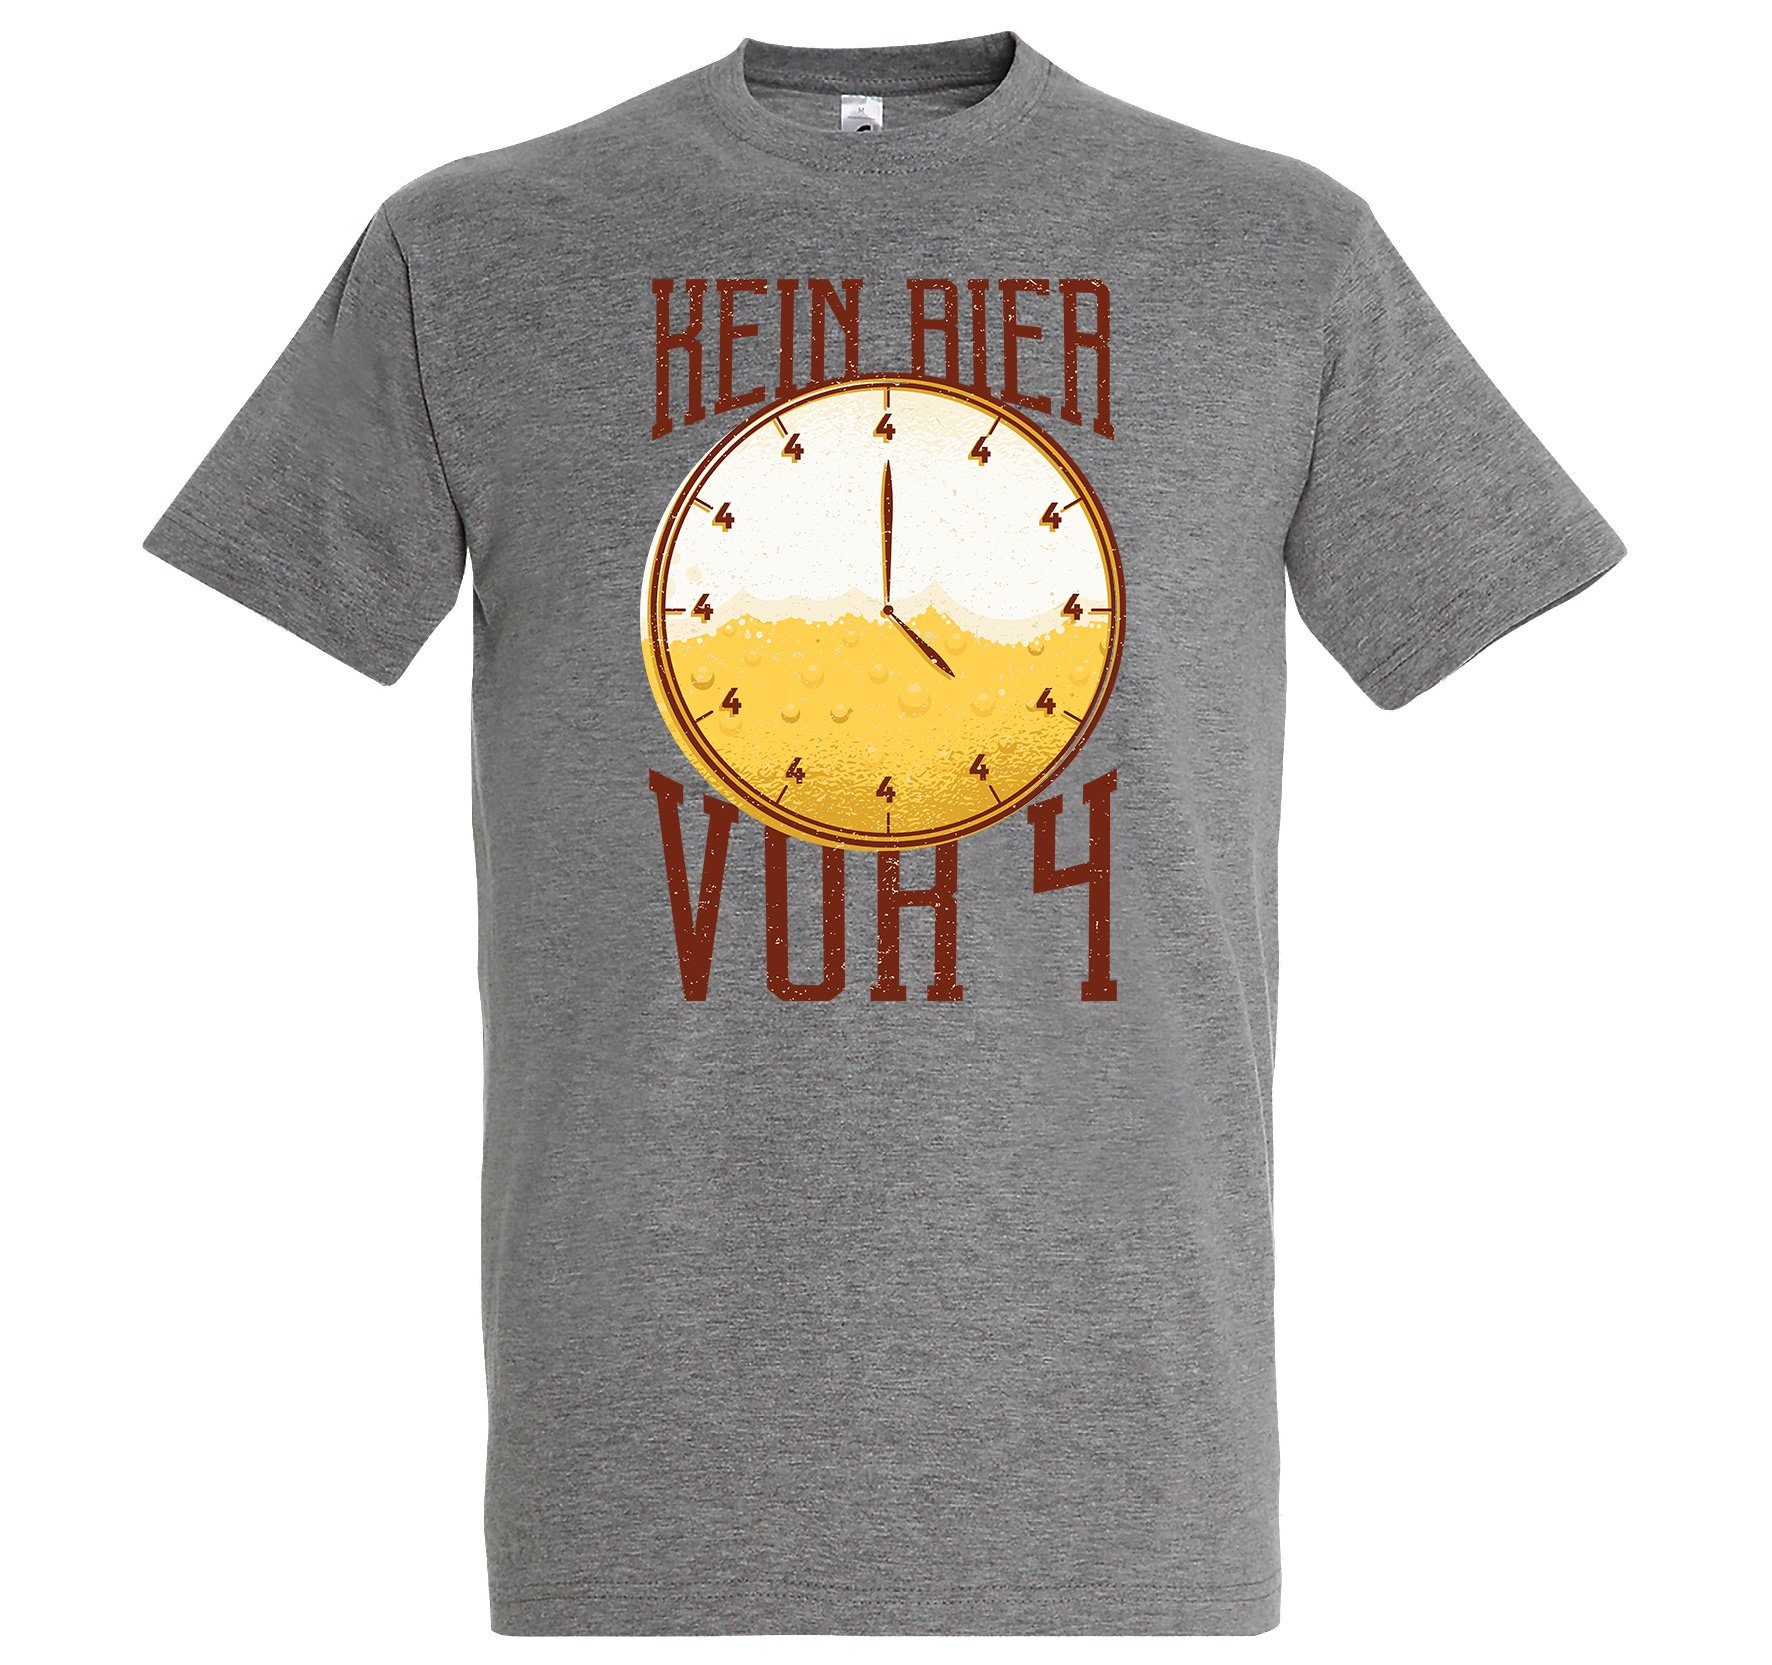 BierVor4 mit Herren T-Shirt Grau lustigem Shirt Youth Spruch Designz